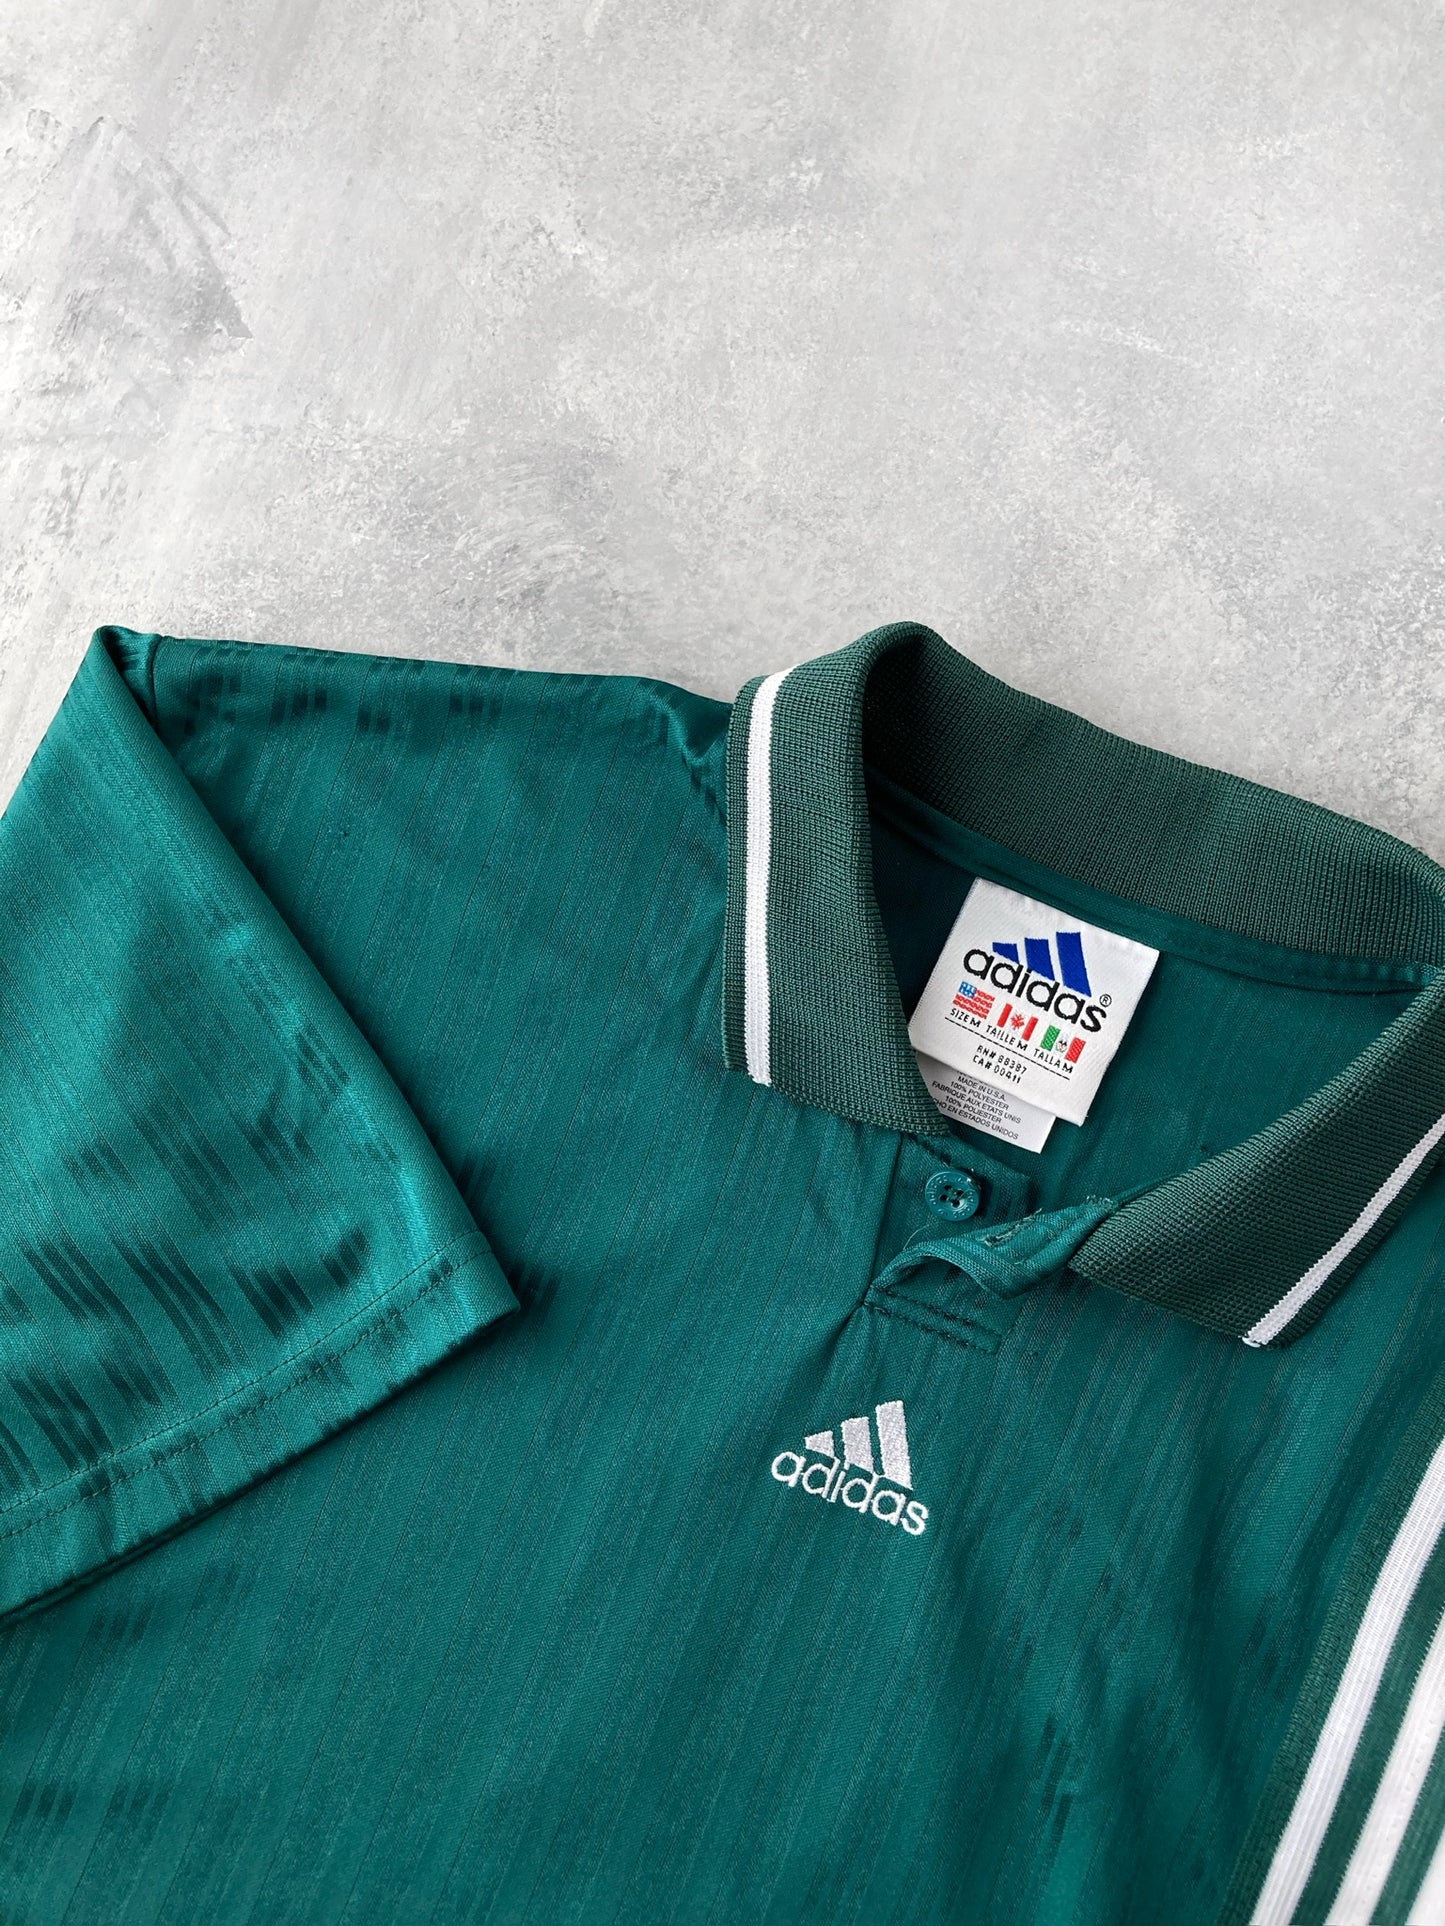 Adidas Soccer Jersey 90's - Medium